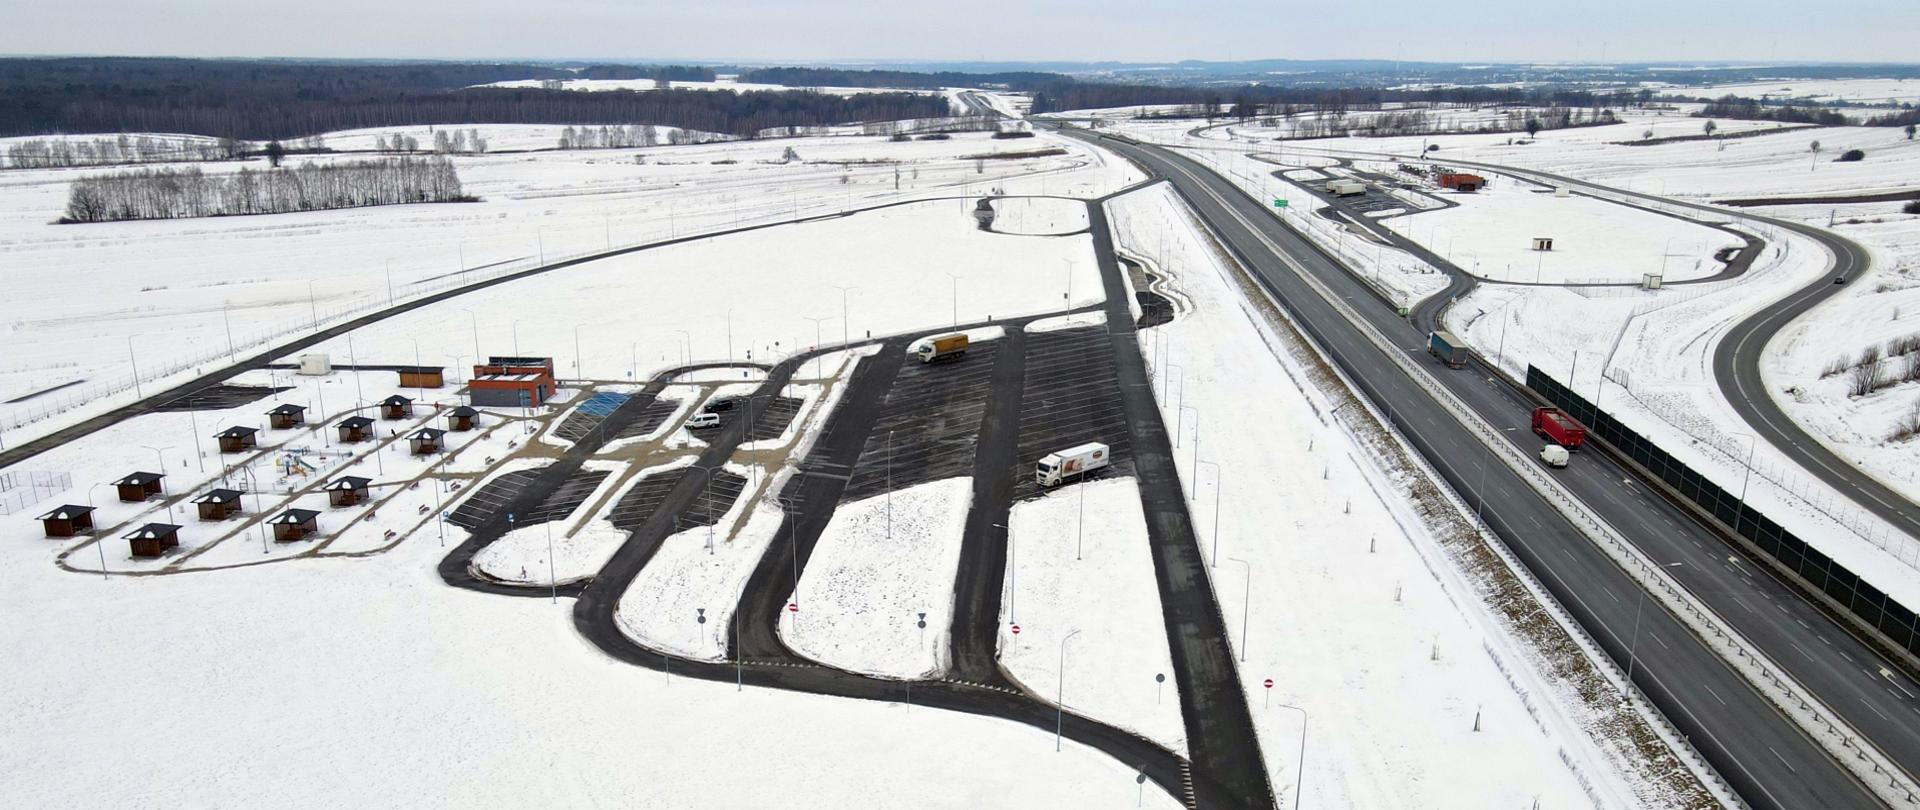 Miejsca Obsługi Podróżnych Słodków na drodze ekspresowej S19. Zdjęcie wykonane zimą z drona. Wokół MOPów zaśnieżone pola i lasy.